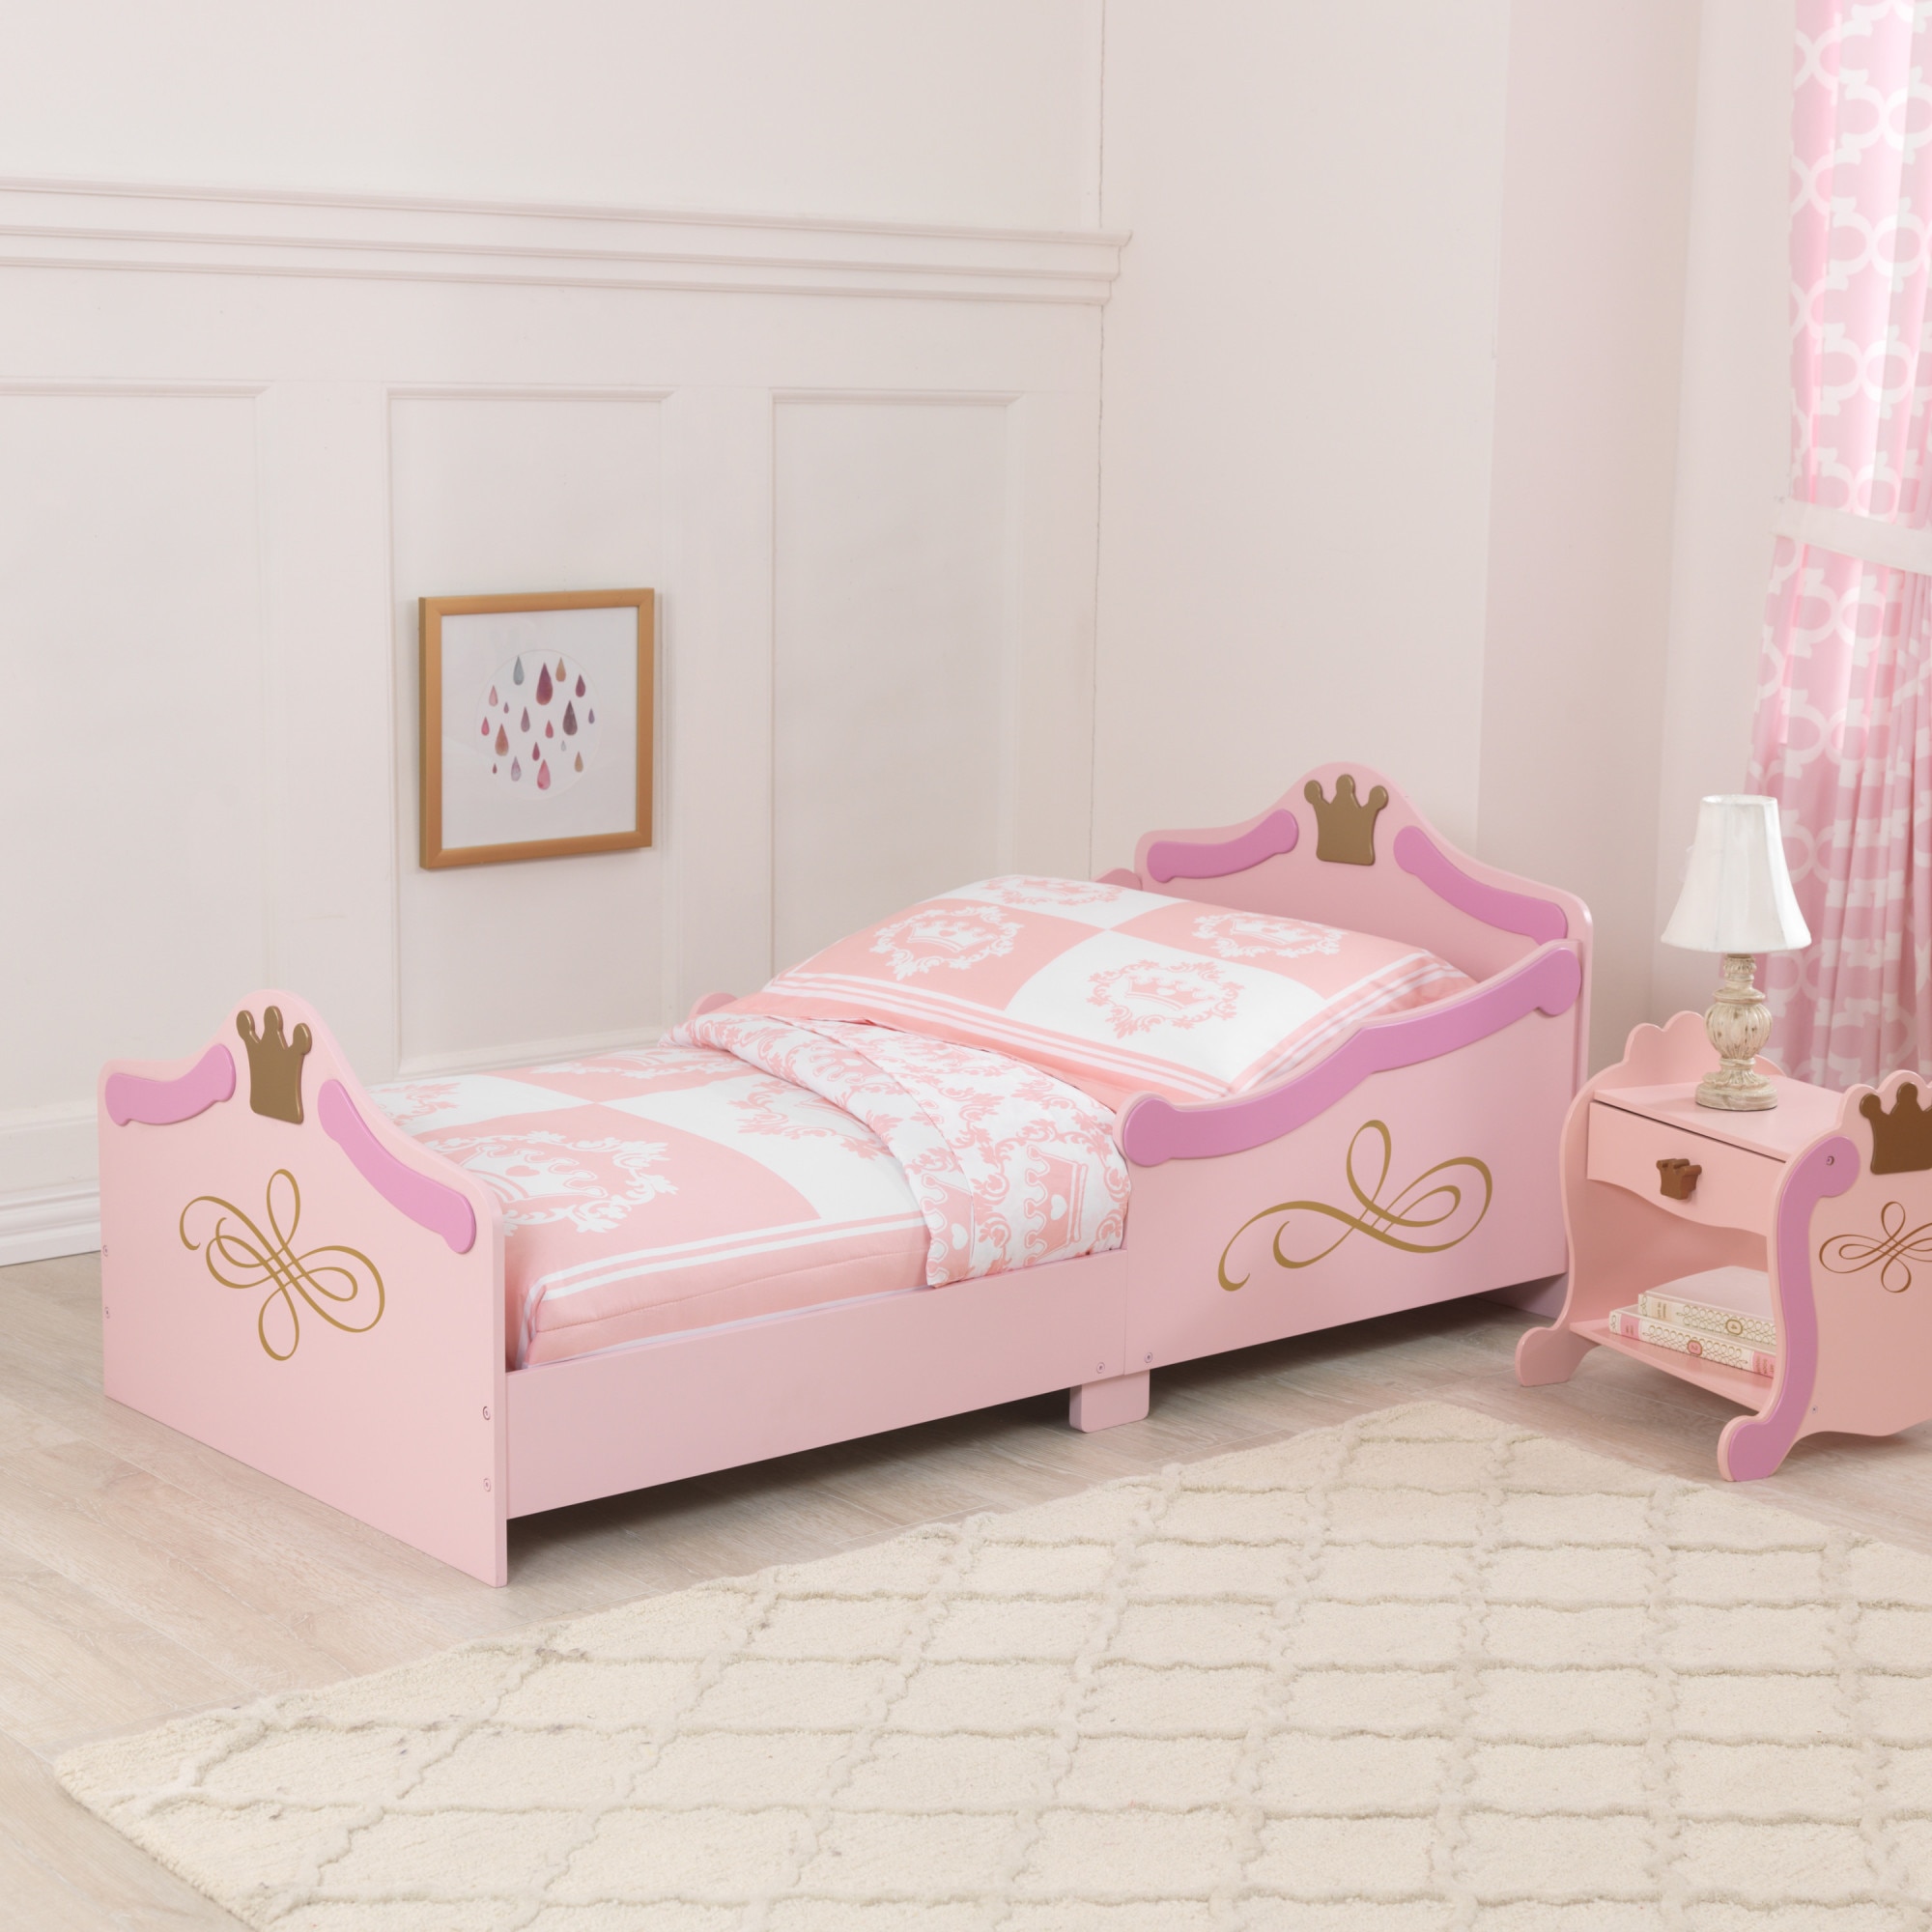 Детская принцесса. Кровать kidkraft принцесса. Кровать детская kidkraft пожарная машина 76031_ke. Кровать для принцессы хофф. Кроватка принцесса Арника.